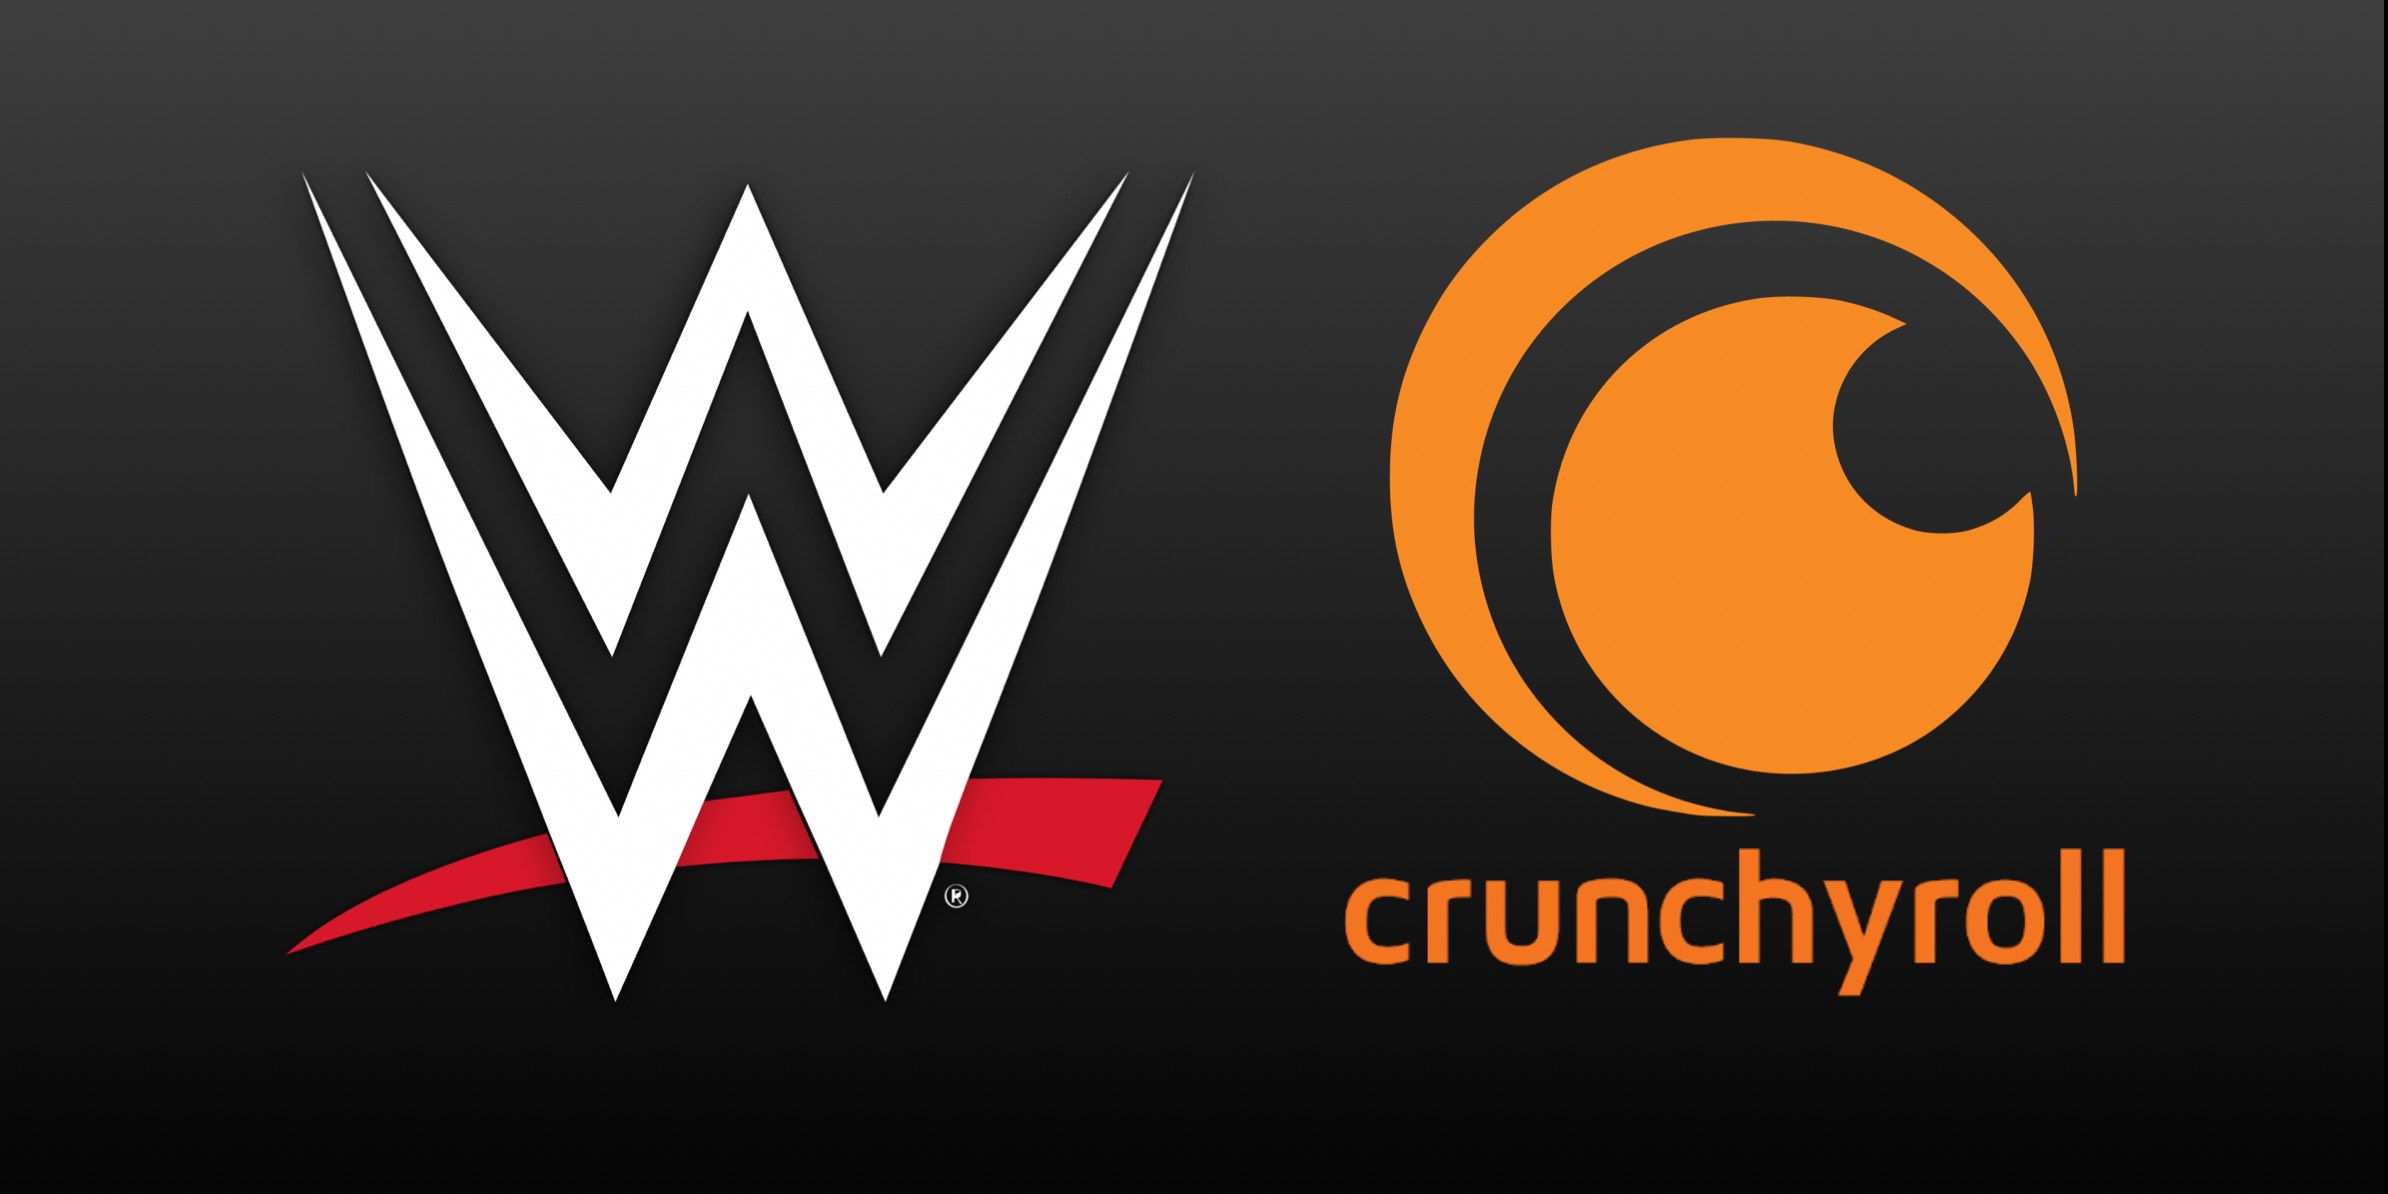 WWE Crunchyroll logos